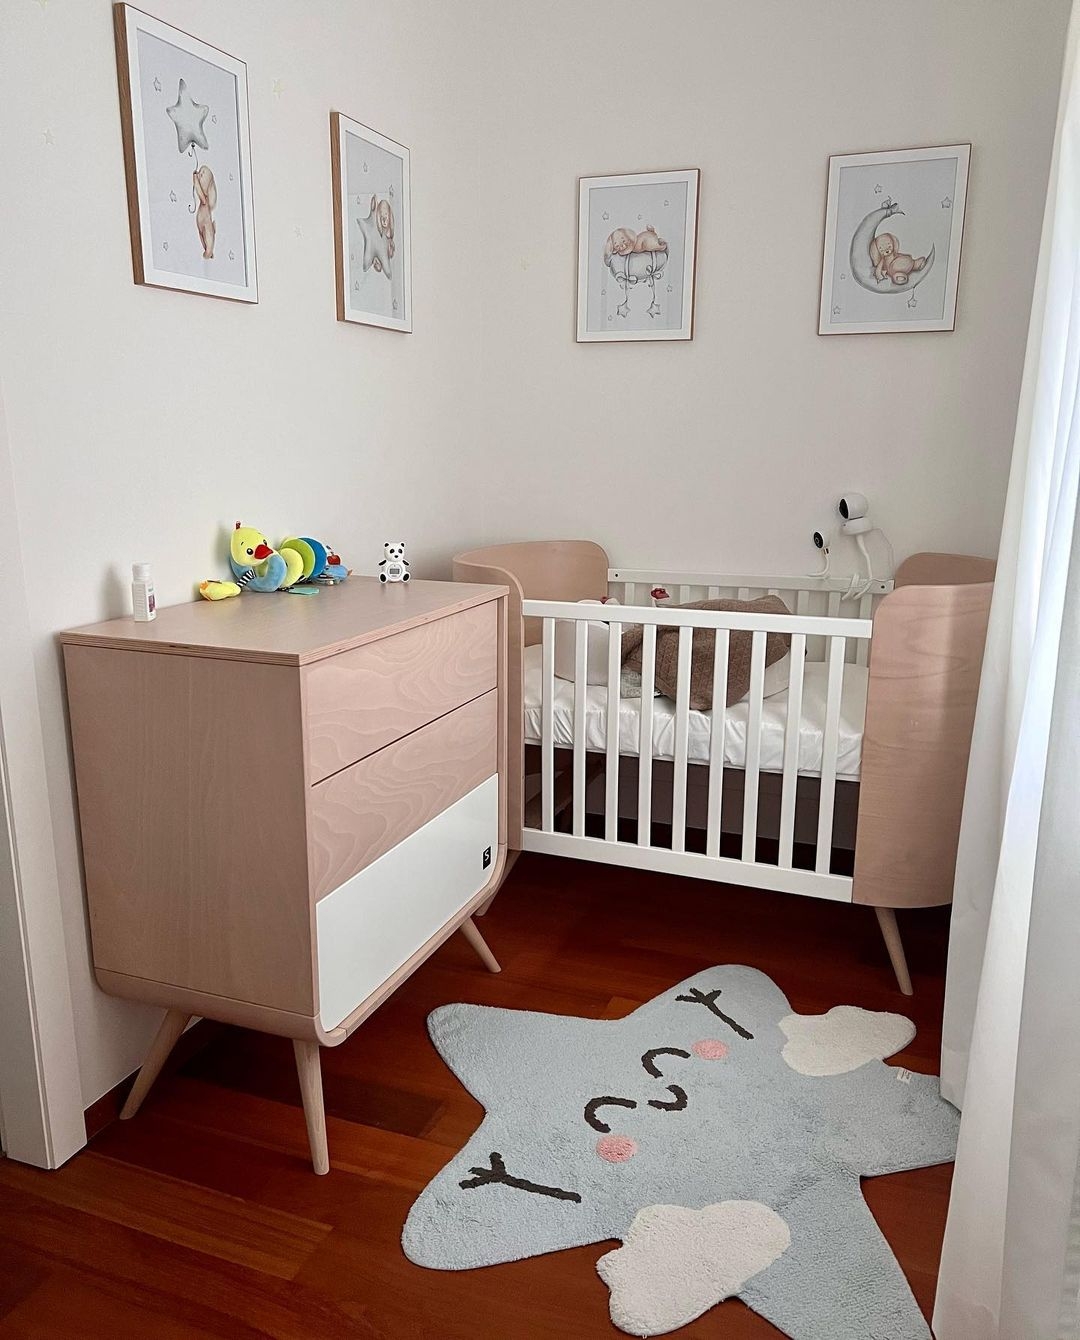 Материнские будни: Элина Свитолина показала комнату новорожденной дочери (ФОТО) - фото №1